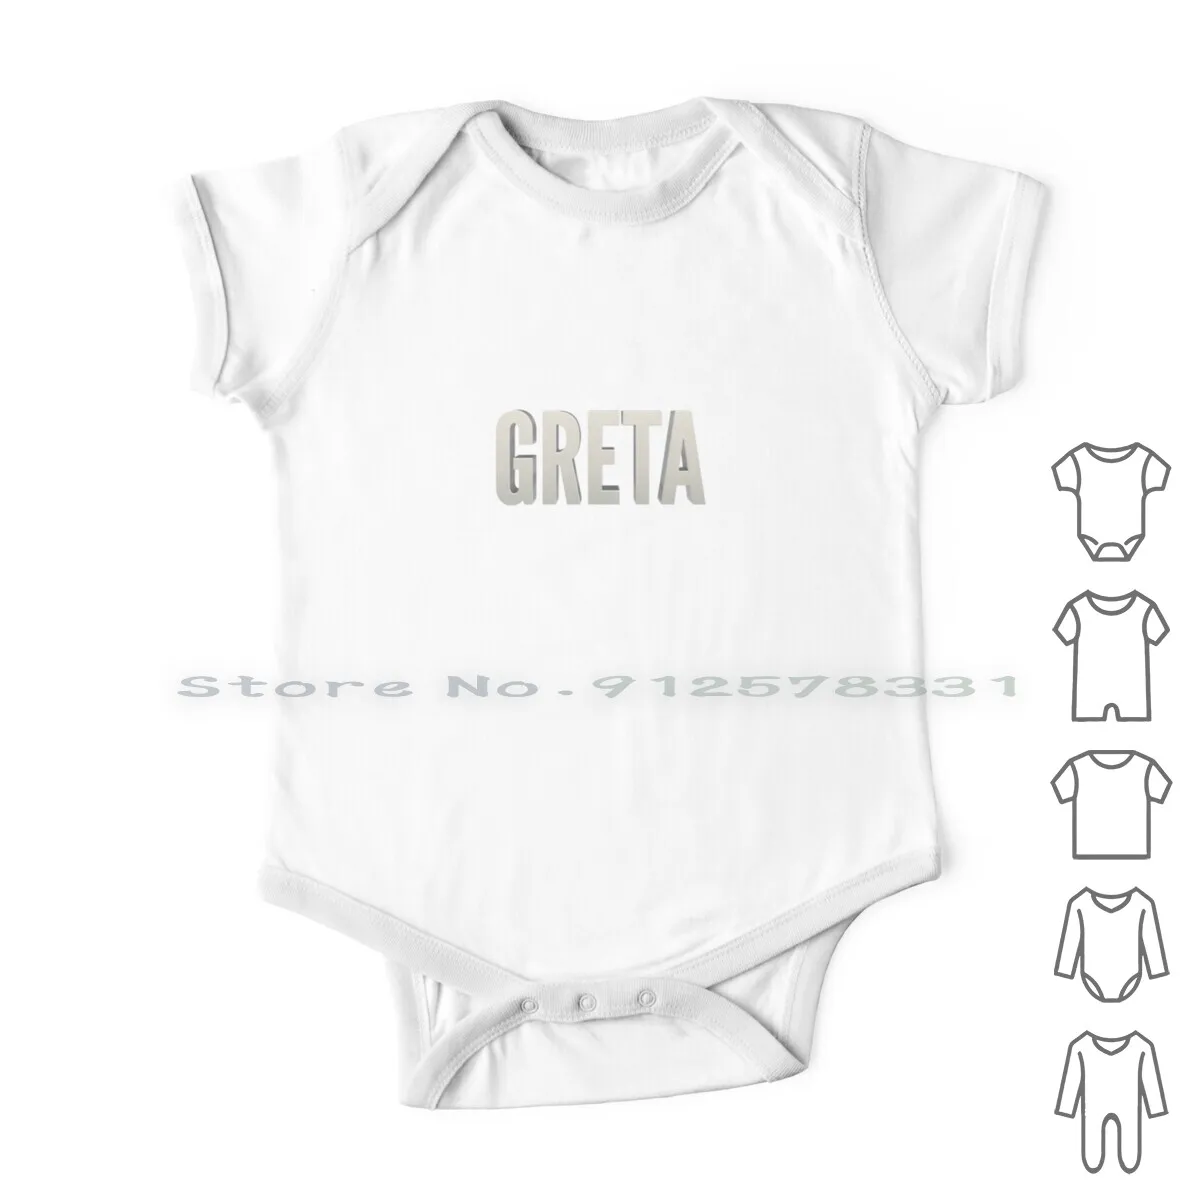 

Имя Greta Одежда для новорожденных детей комбинезоны хлопковые комбинезоны Greta для девочек и мальчиков имена для младенцев Популярные Детские имена